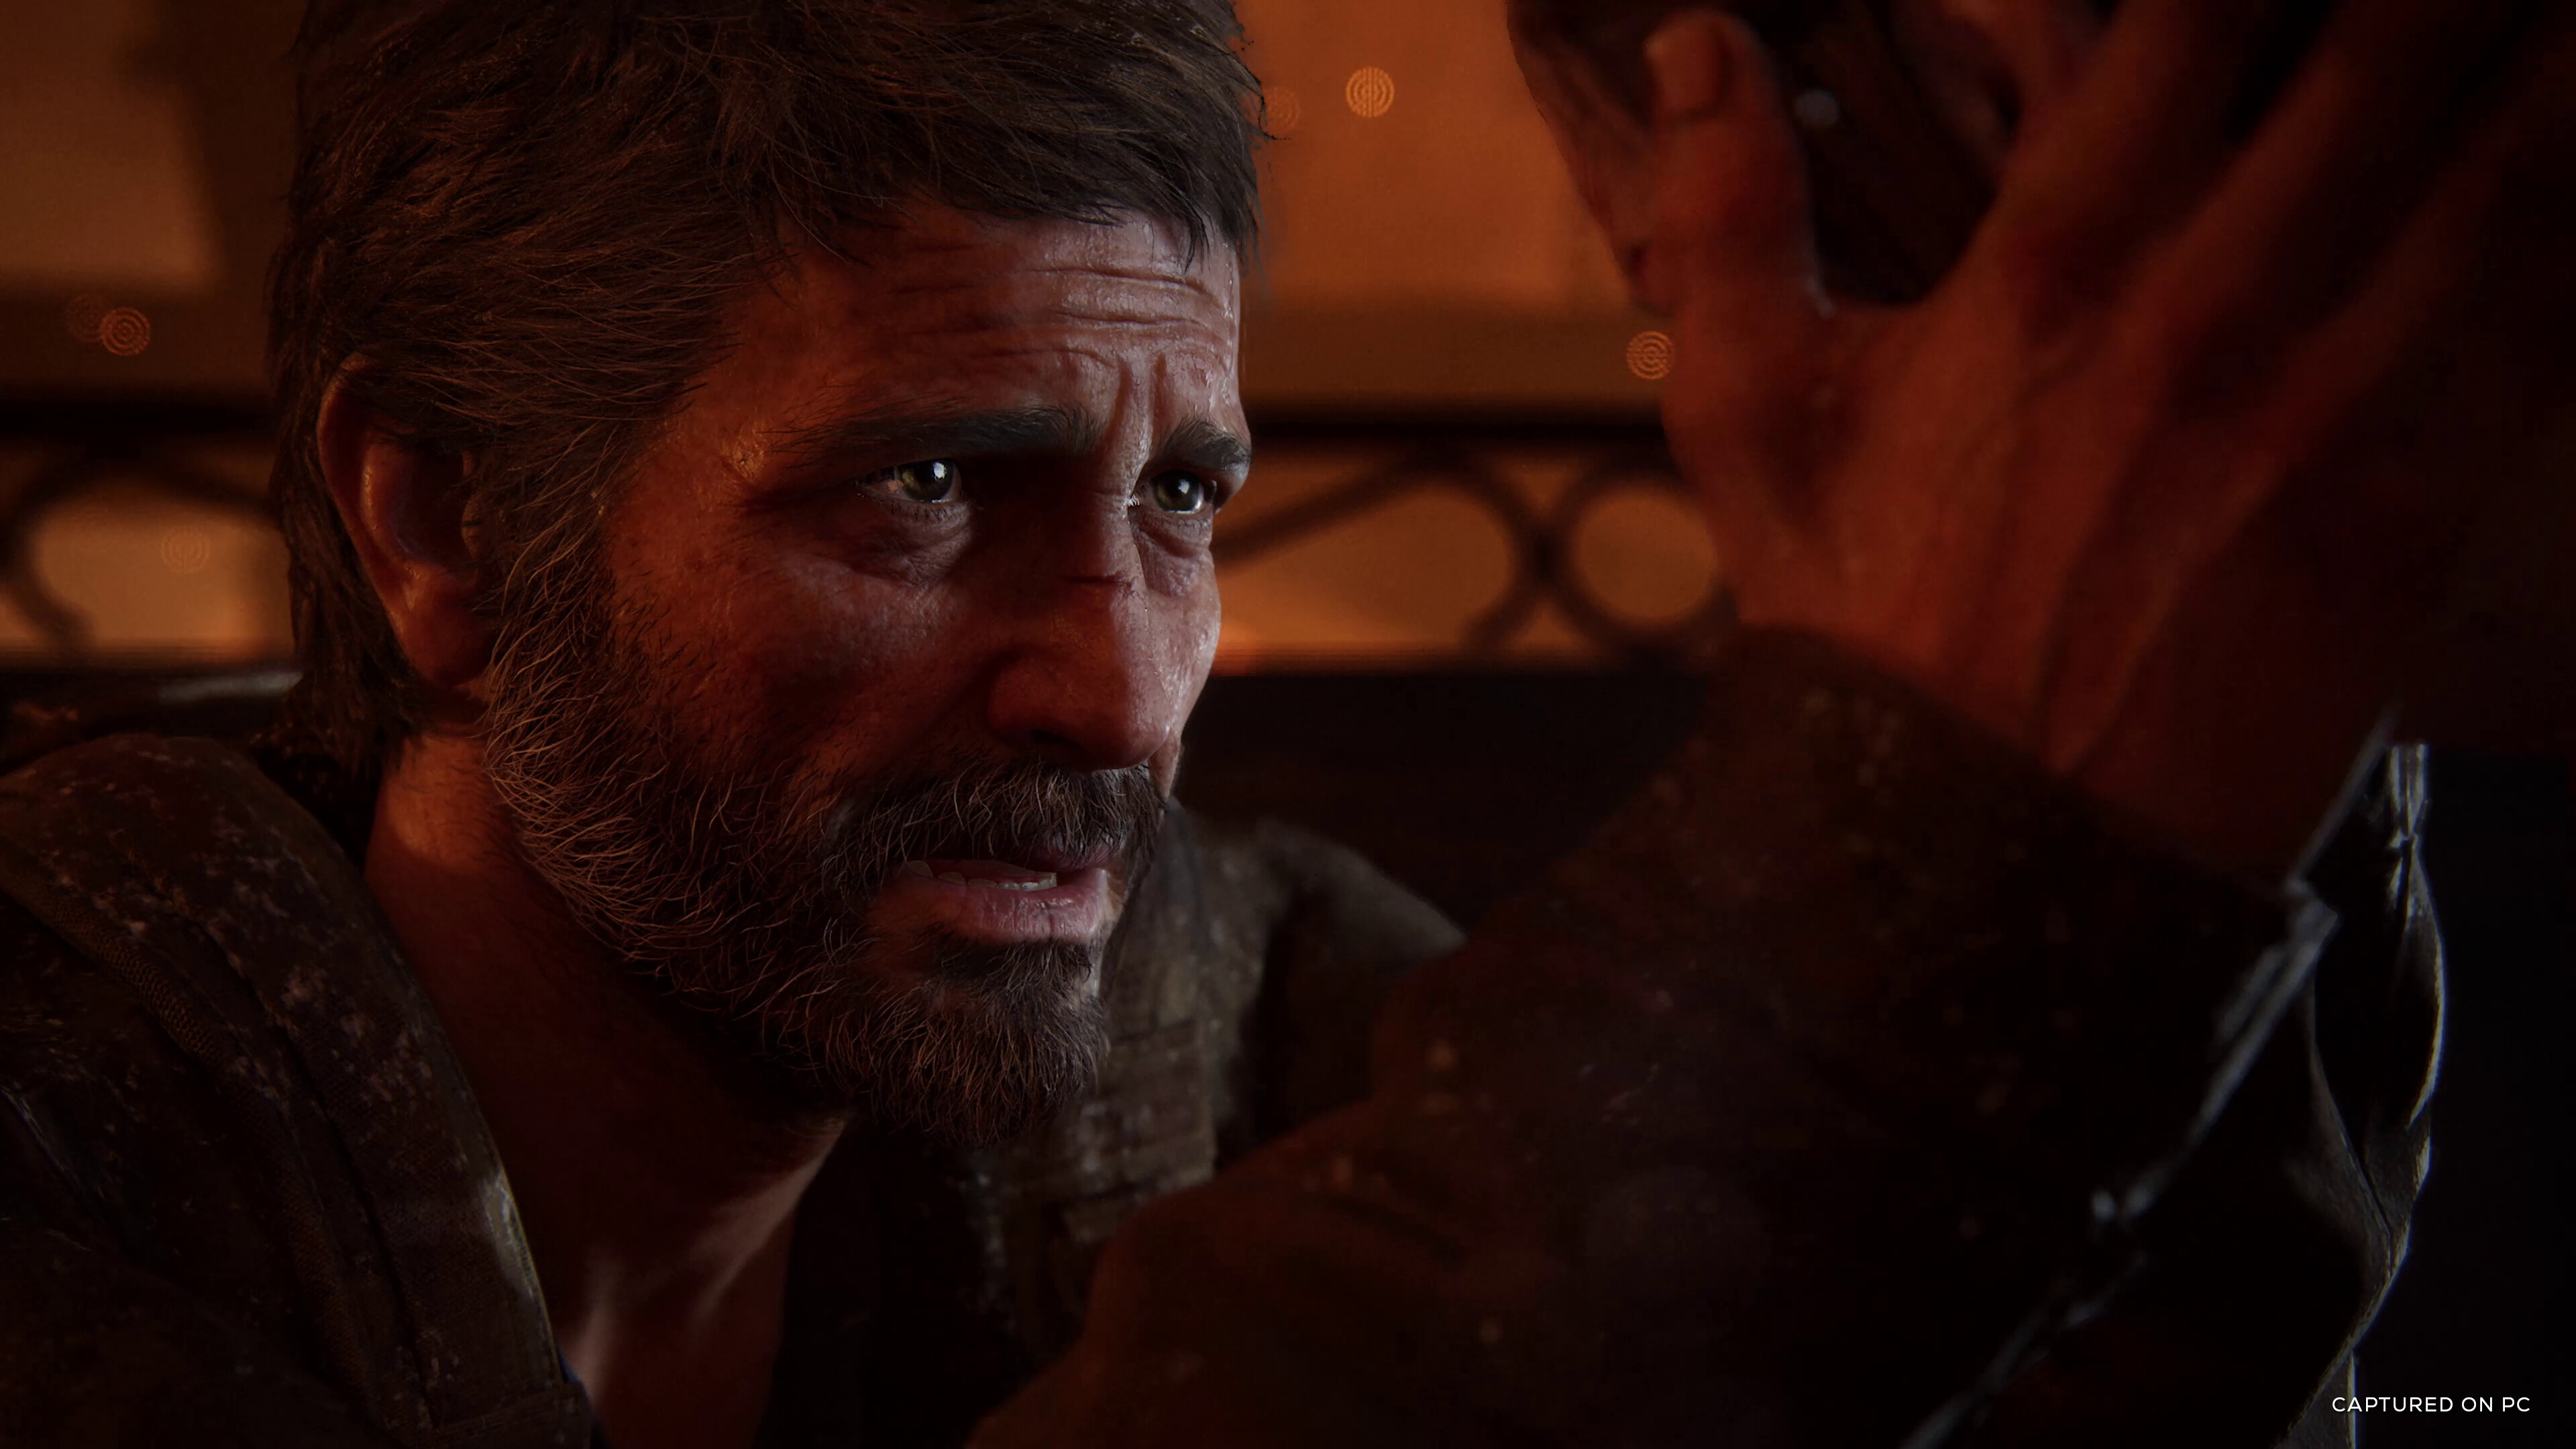 Immagine pubblicata in relazione al seguente contenuto: Naughty Dog aggiorna il videogame The Last of Us Part I con la patch 1.0.3.0 | Nome immagine: news34367_The-Last-of-Us-Part-I_Screenshot_1.jpg